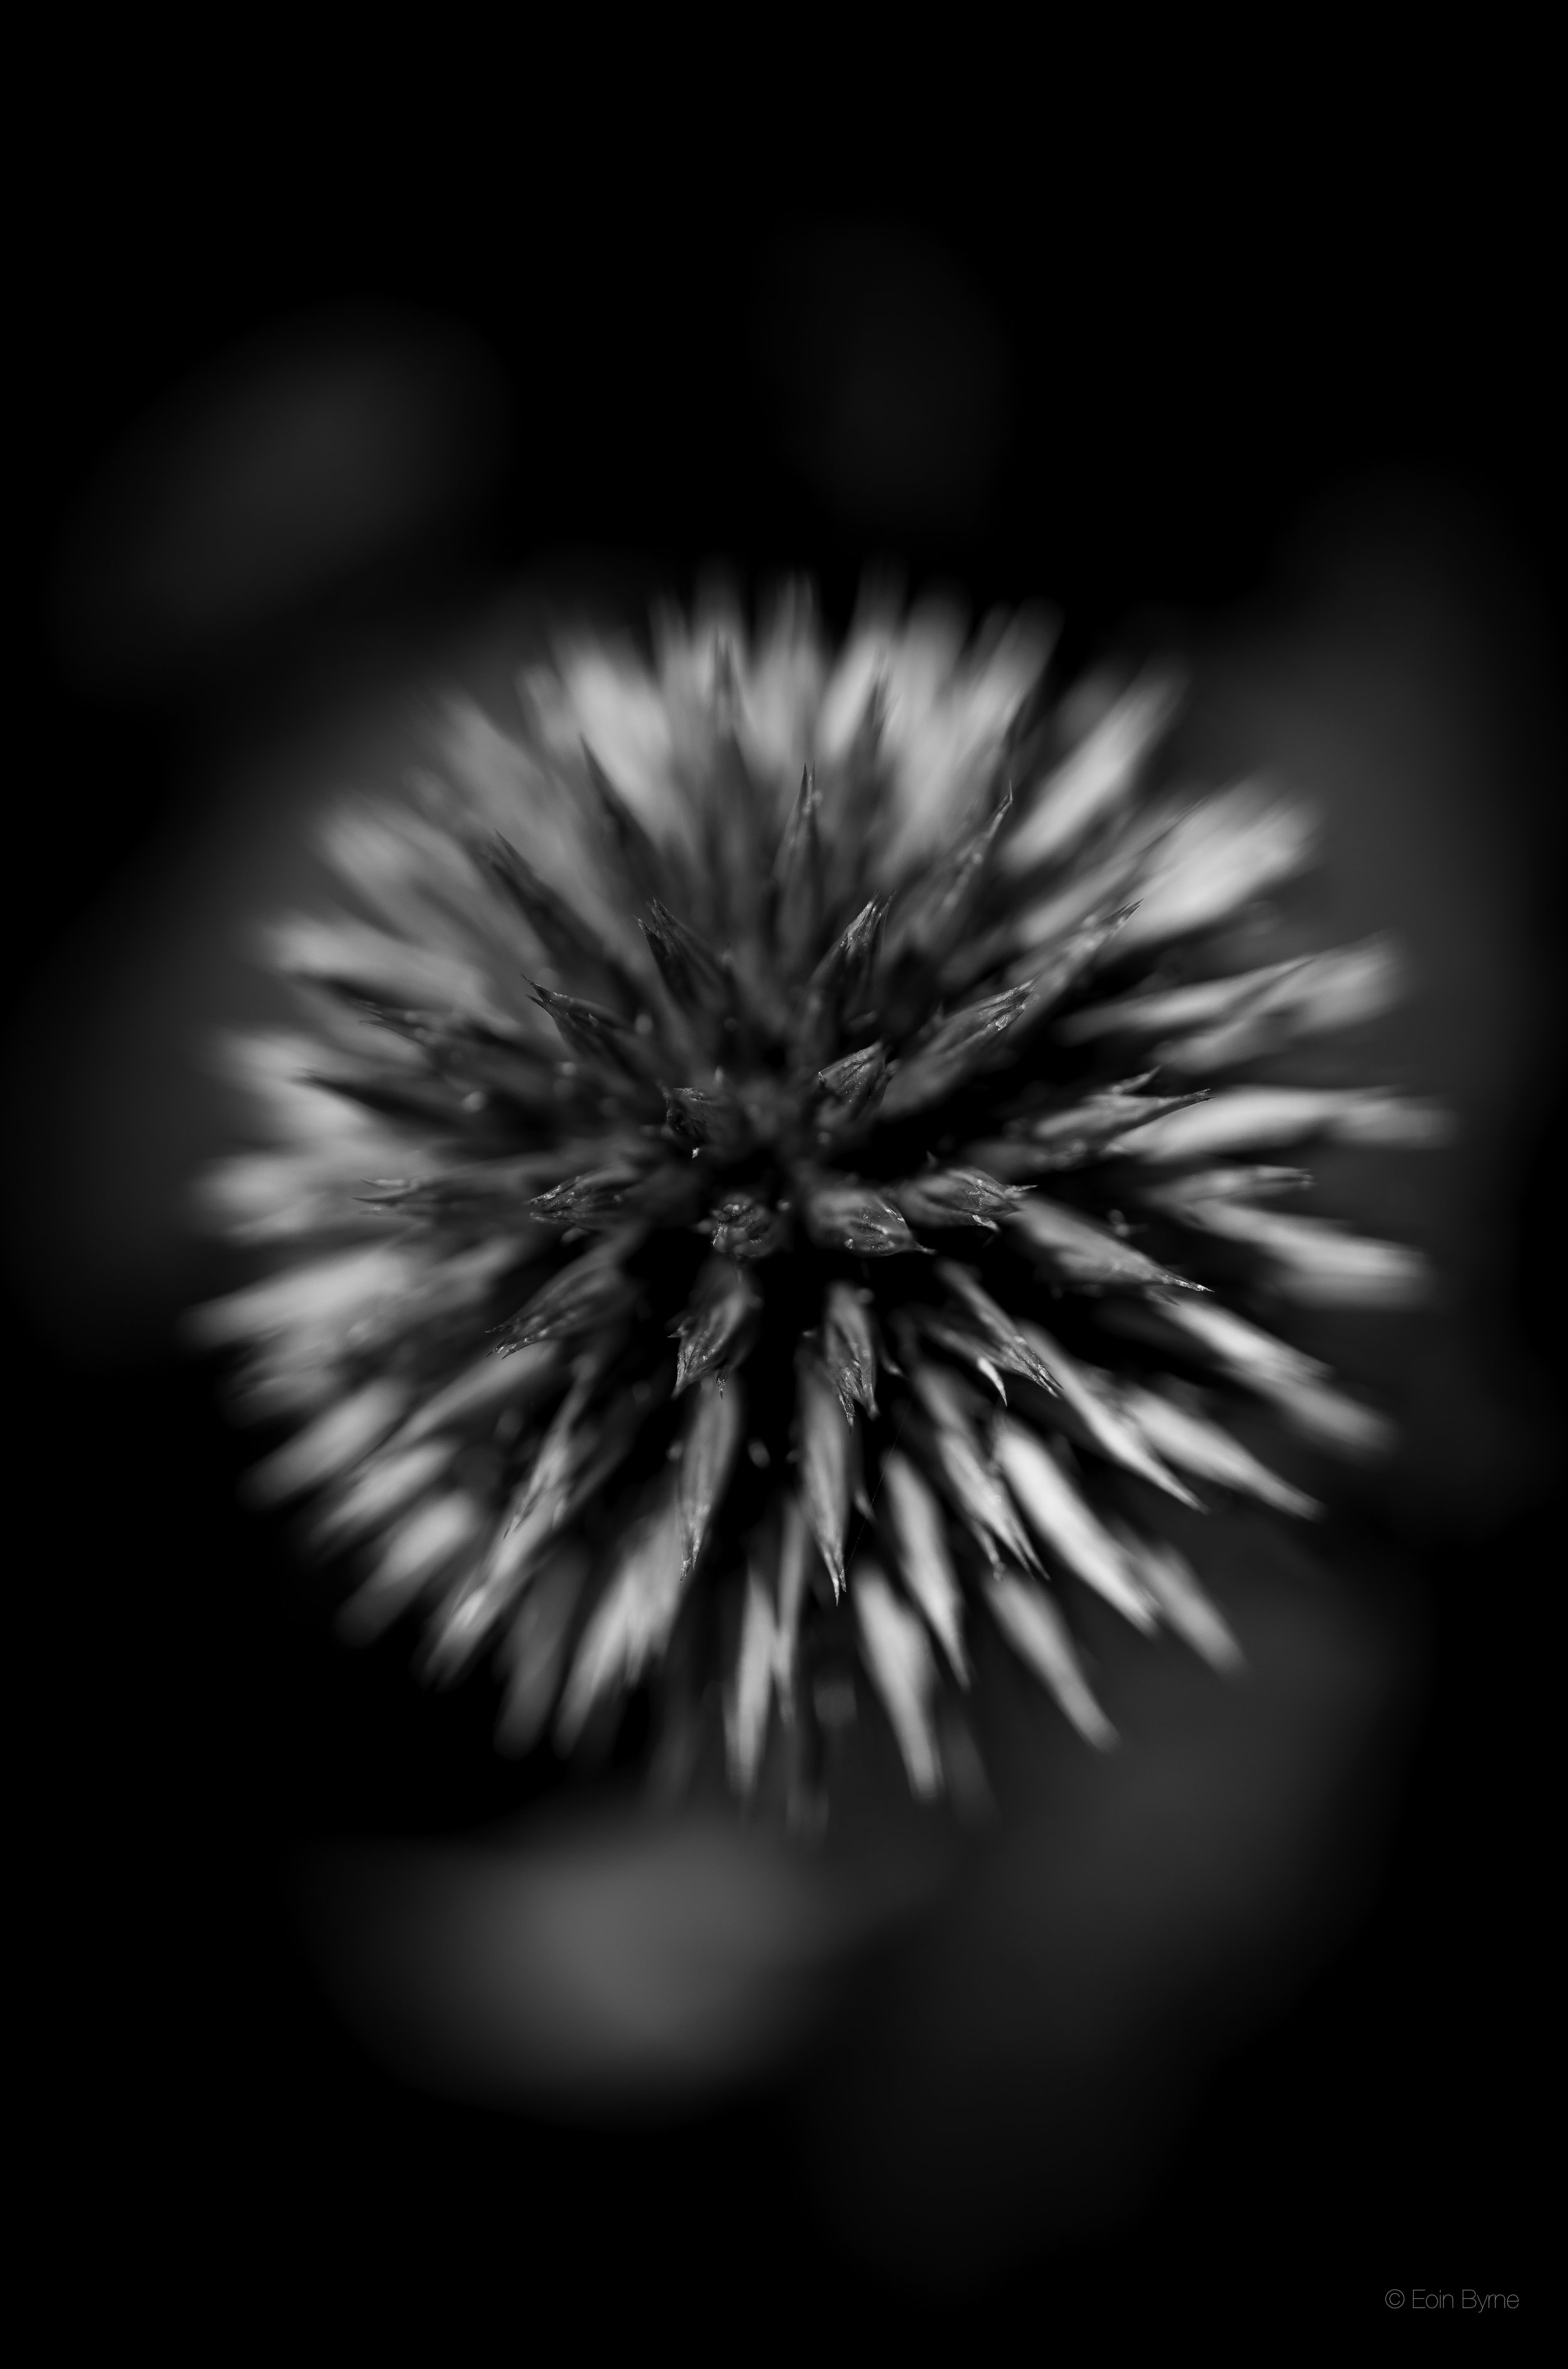 star shaped flower 3.jpg